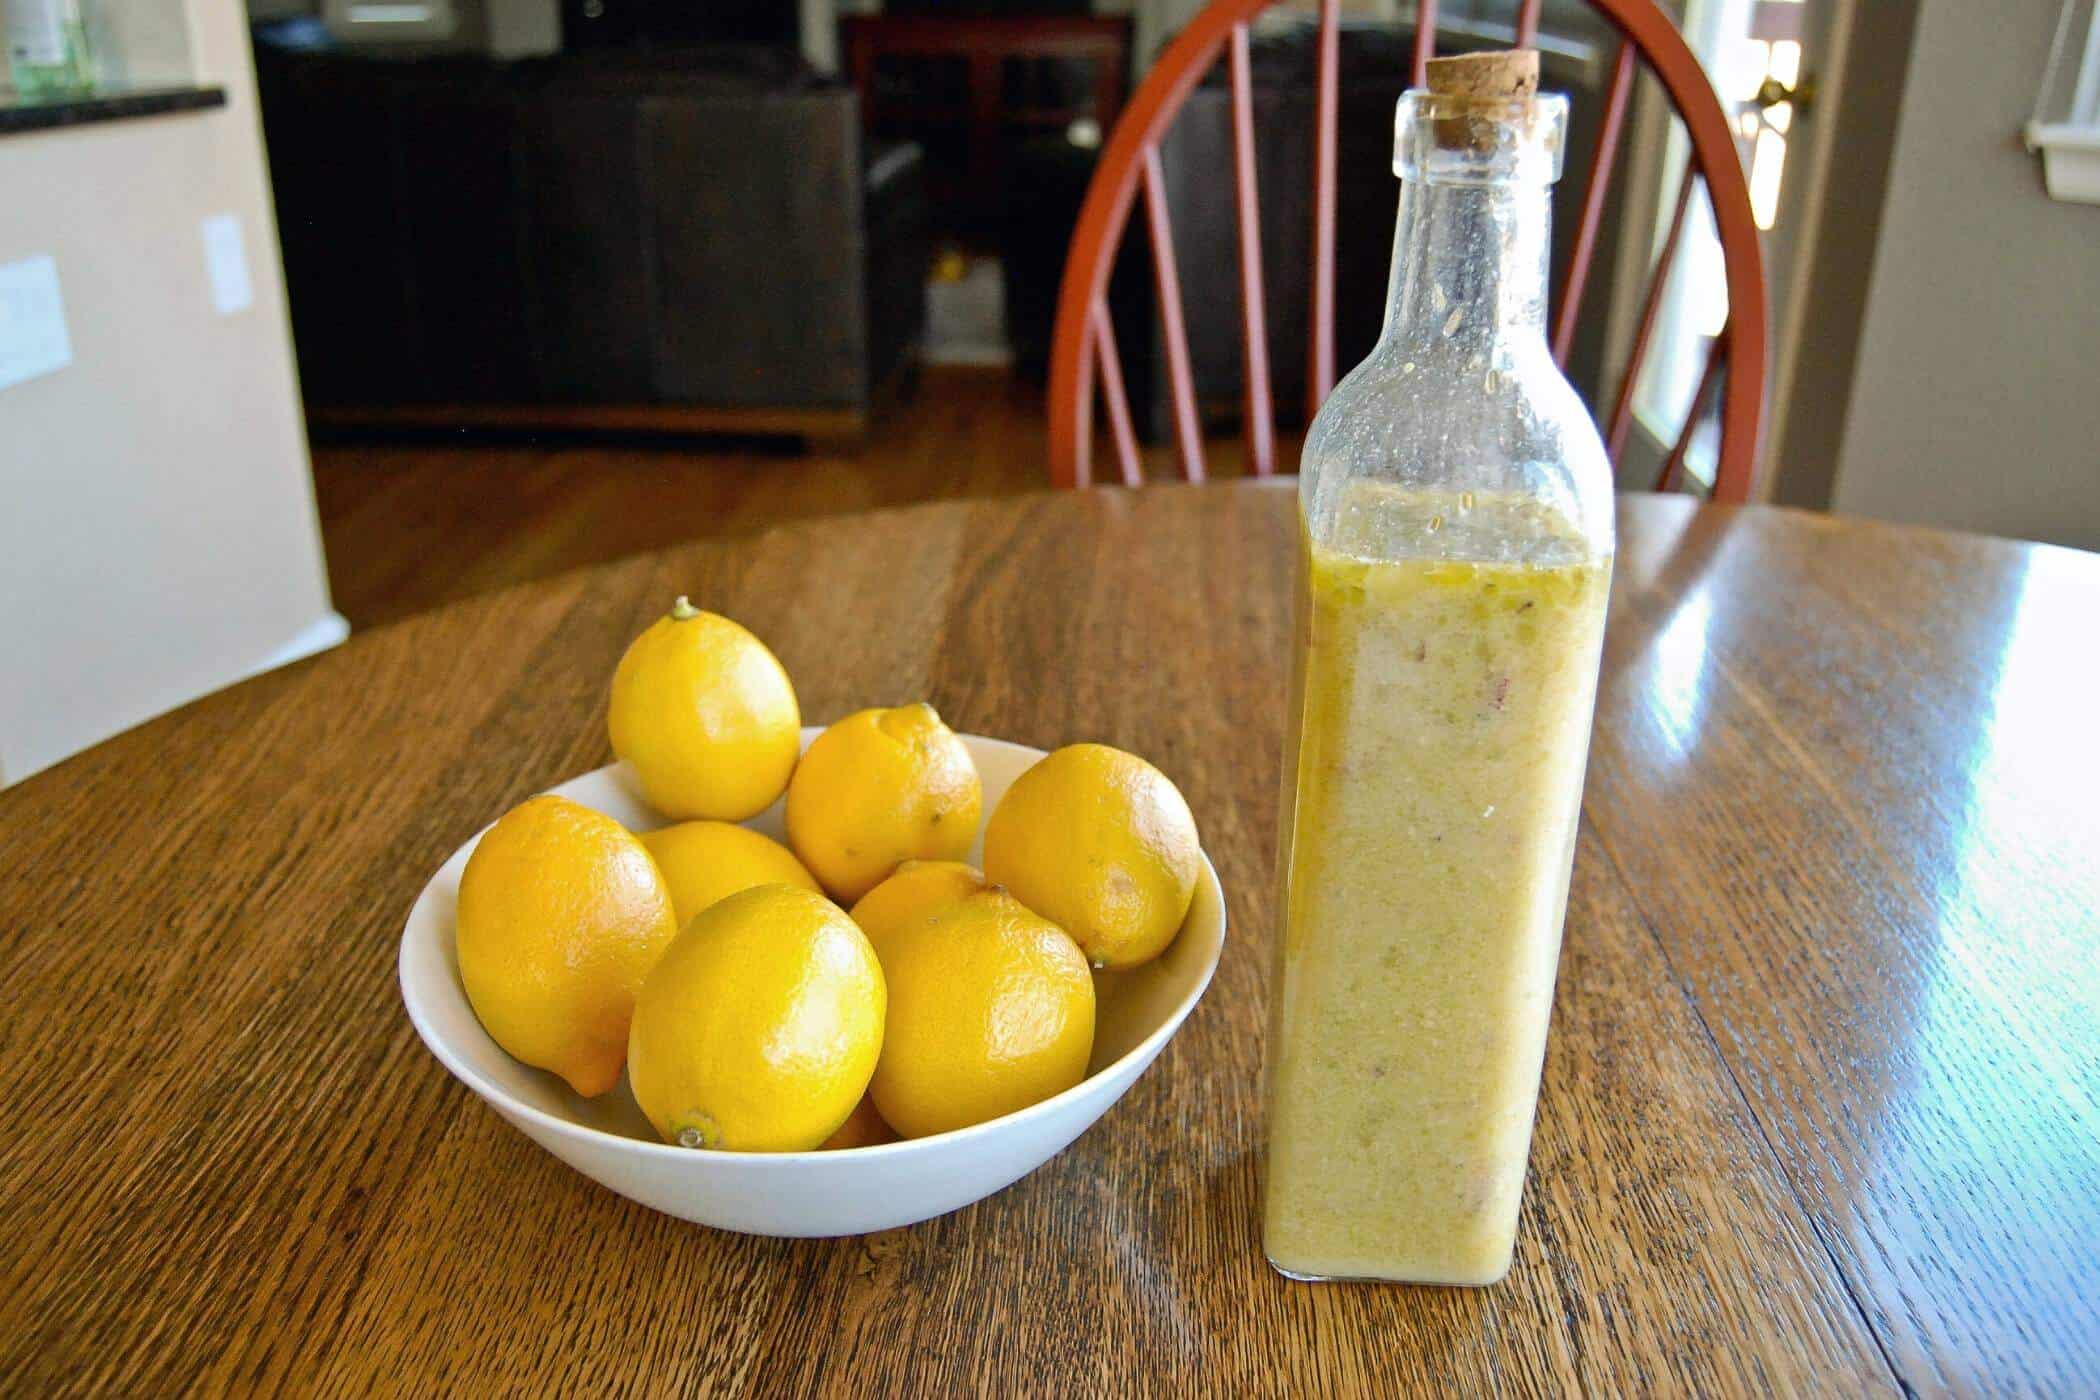 lemon and rosemary vinaigrette in jar next to bowl of lemons.